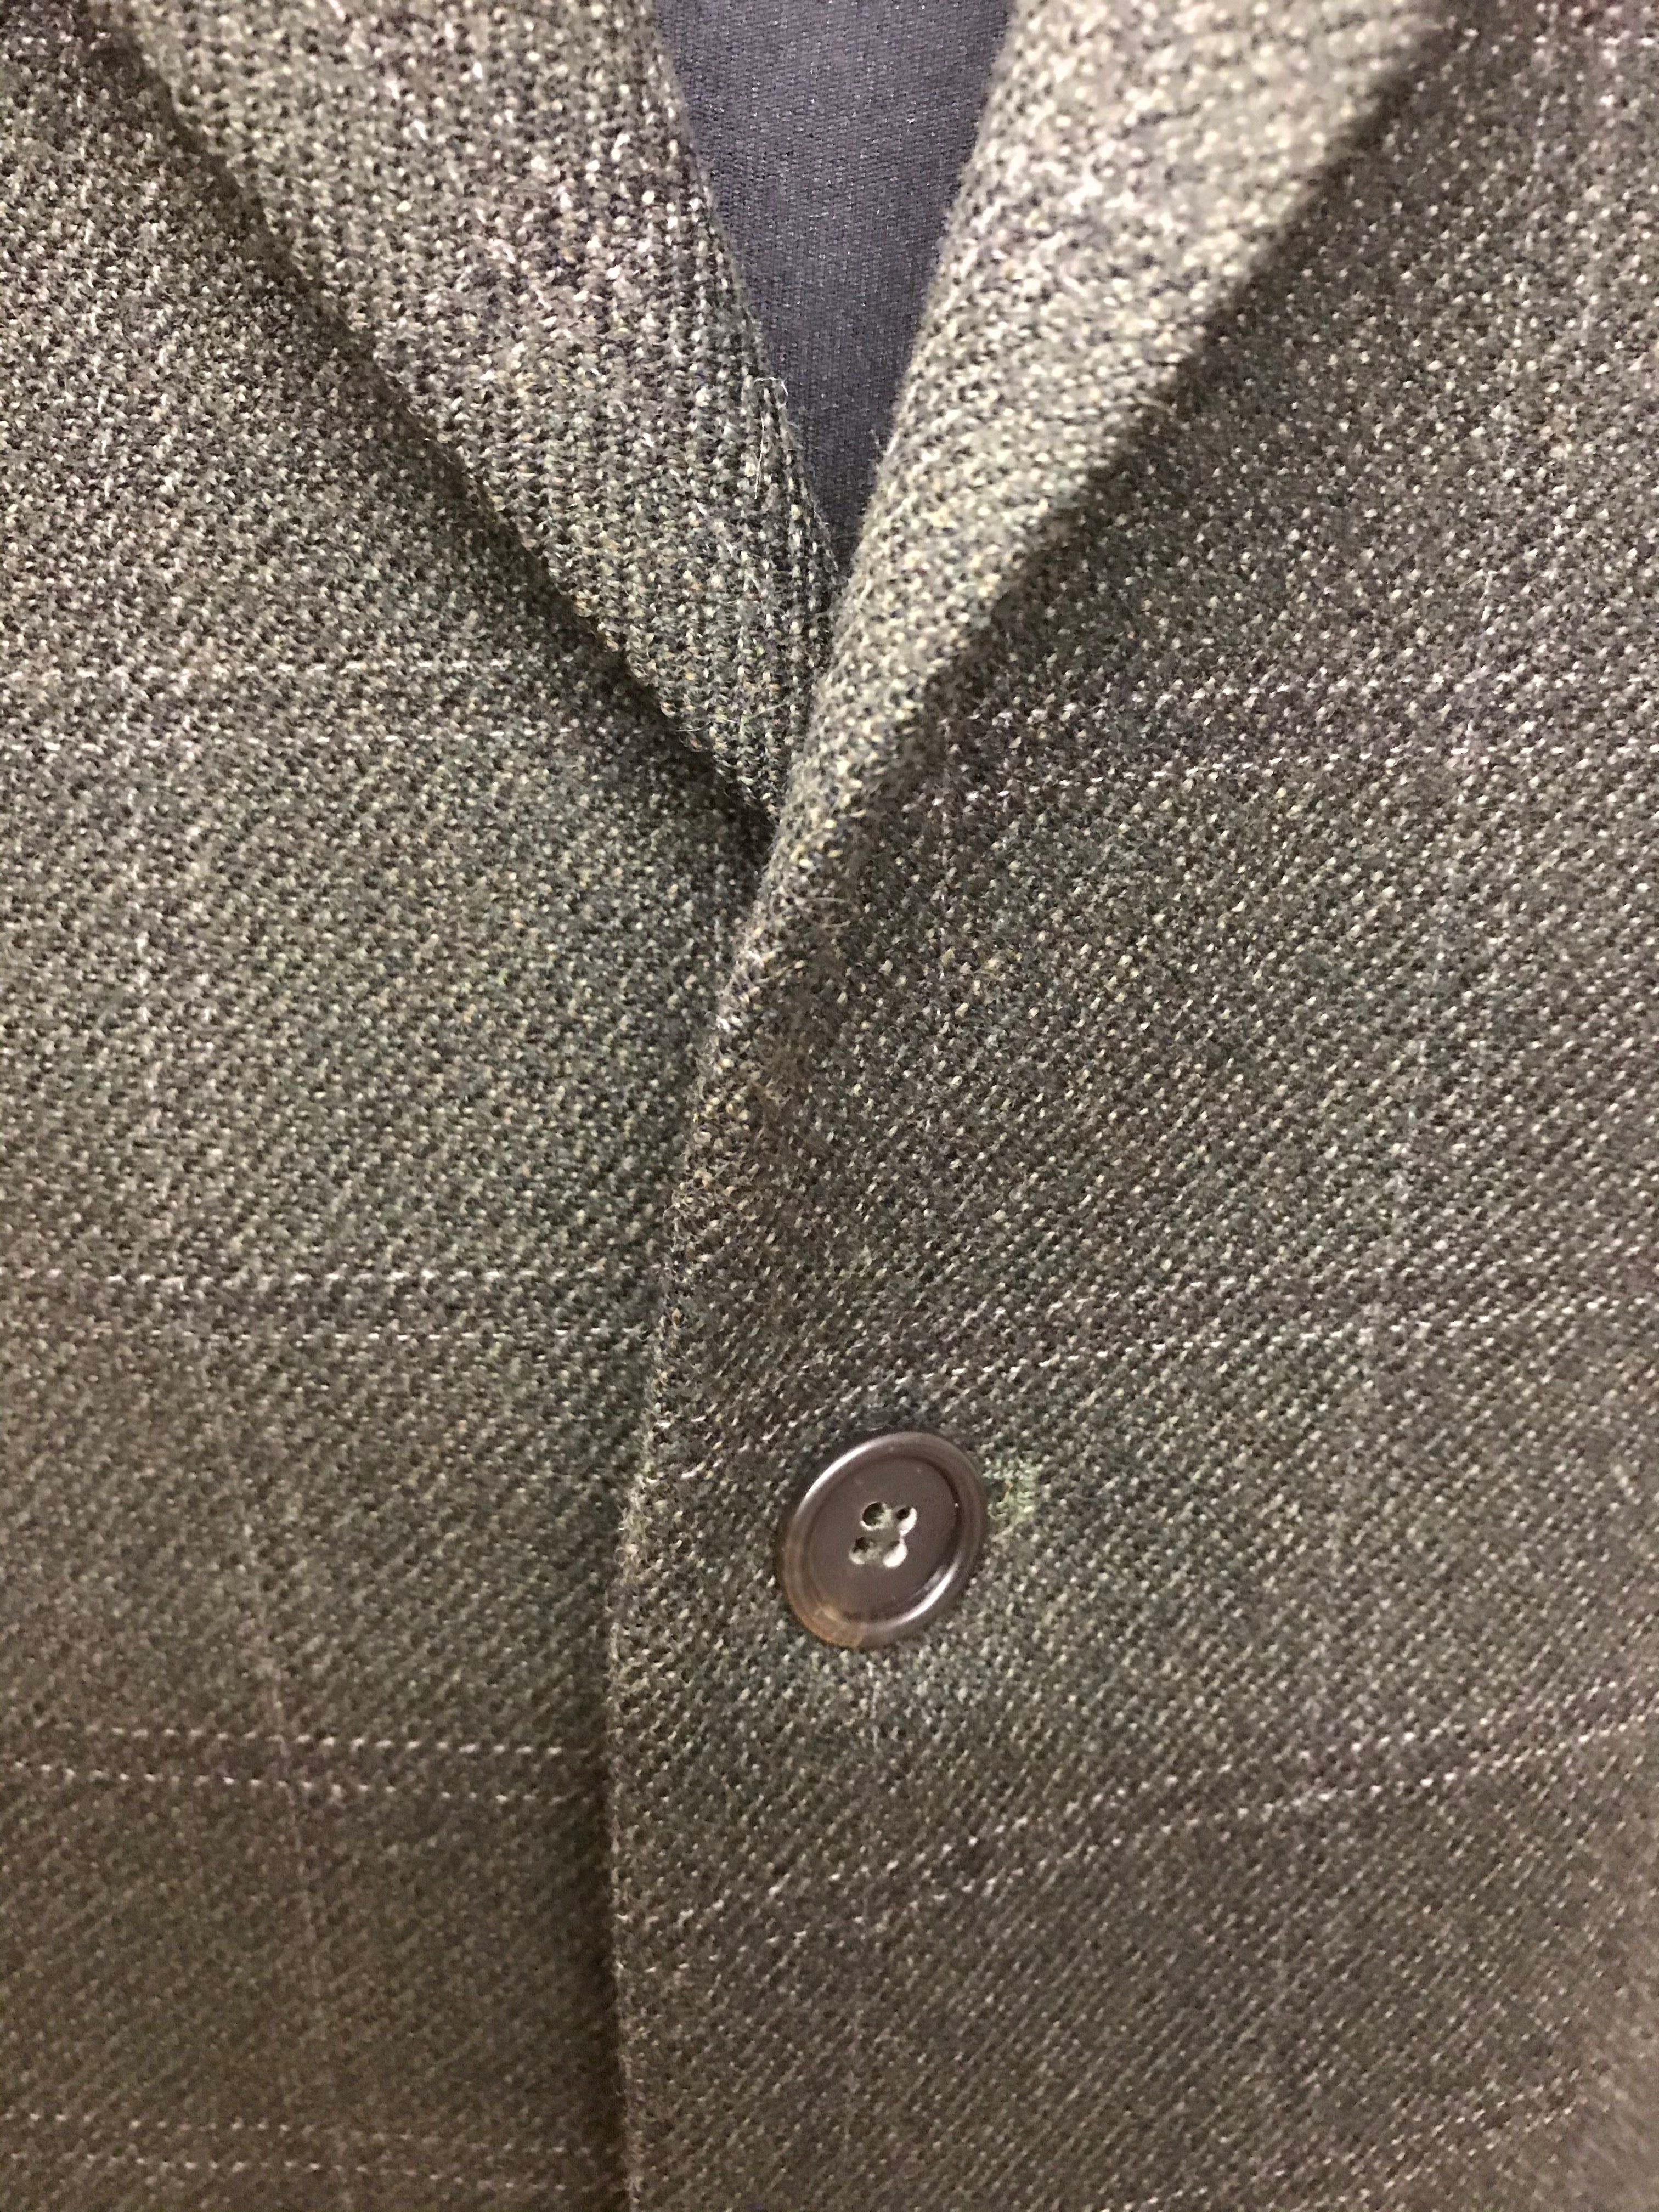 Tweed-Anzug Jacke Gr.52